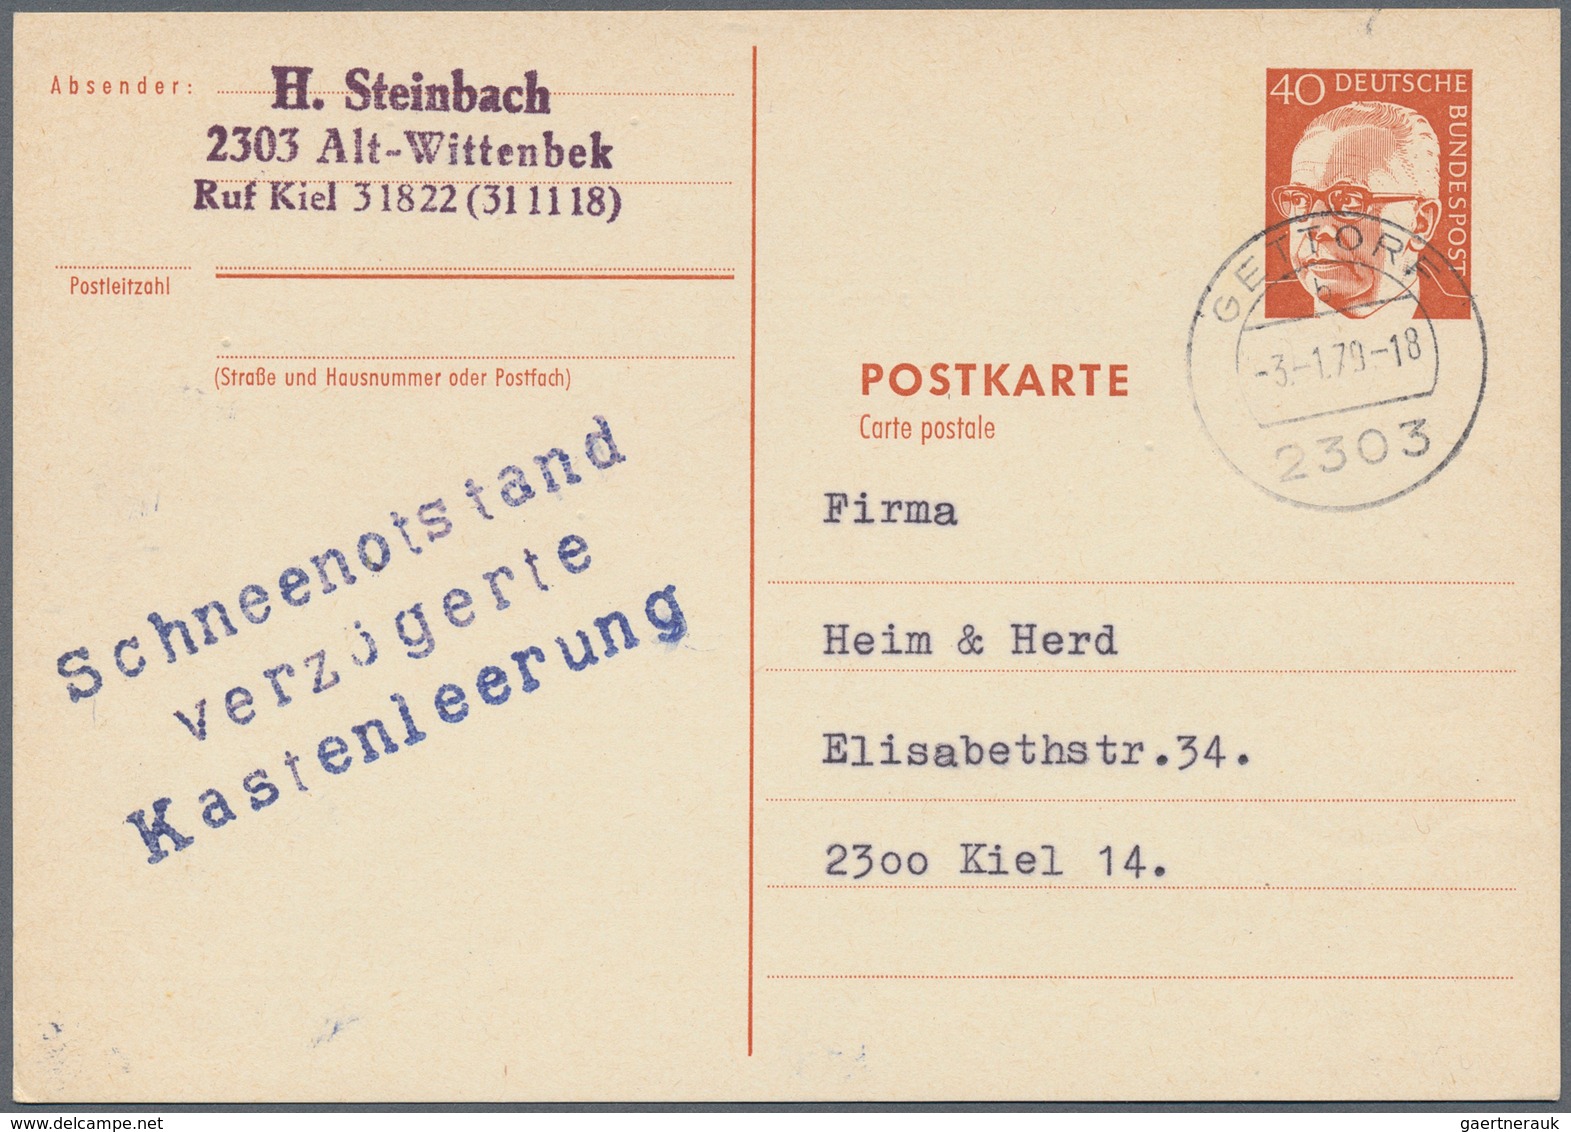 Bundesrepublik Deutschland: 1948/85 (ca.), Posten von ca. 60 aussergewöhnlichen ehemaligen Einzellos